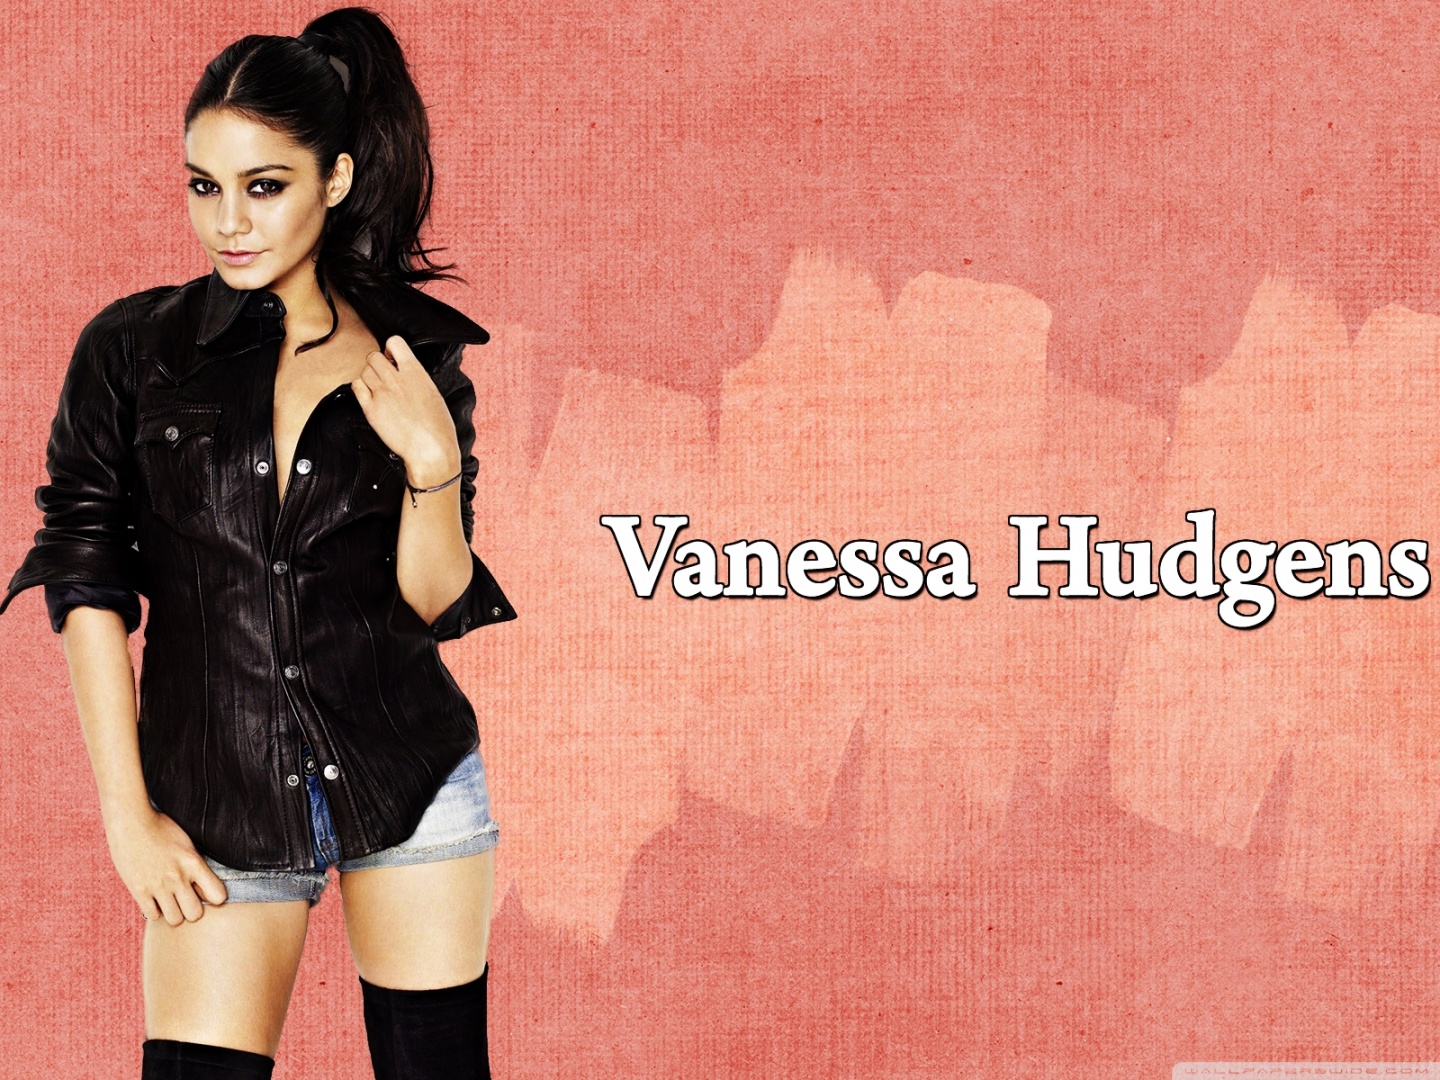 Vanessa hudgens exposed